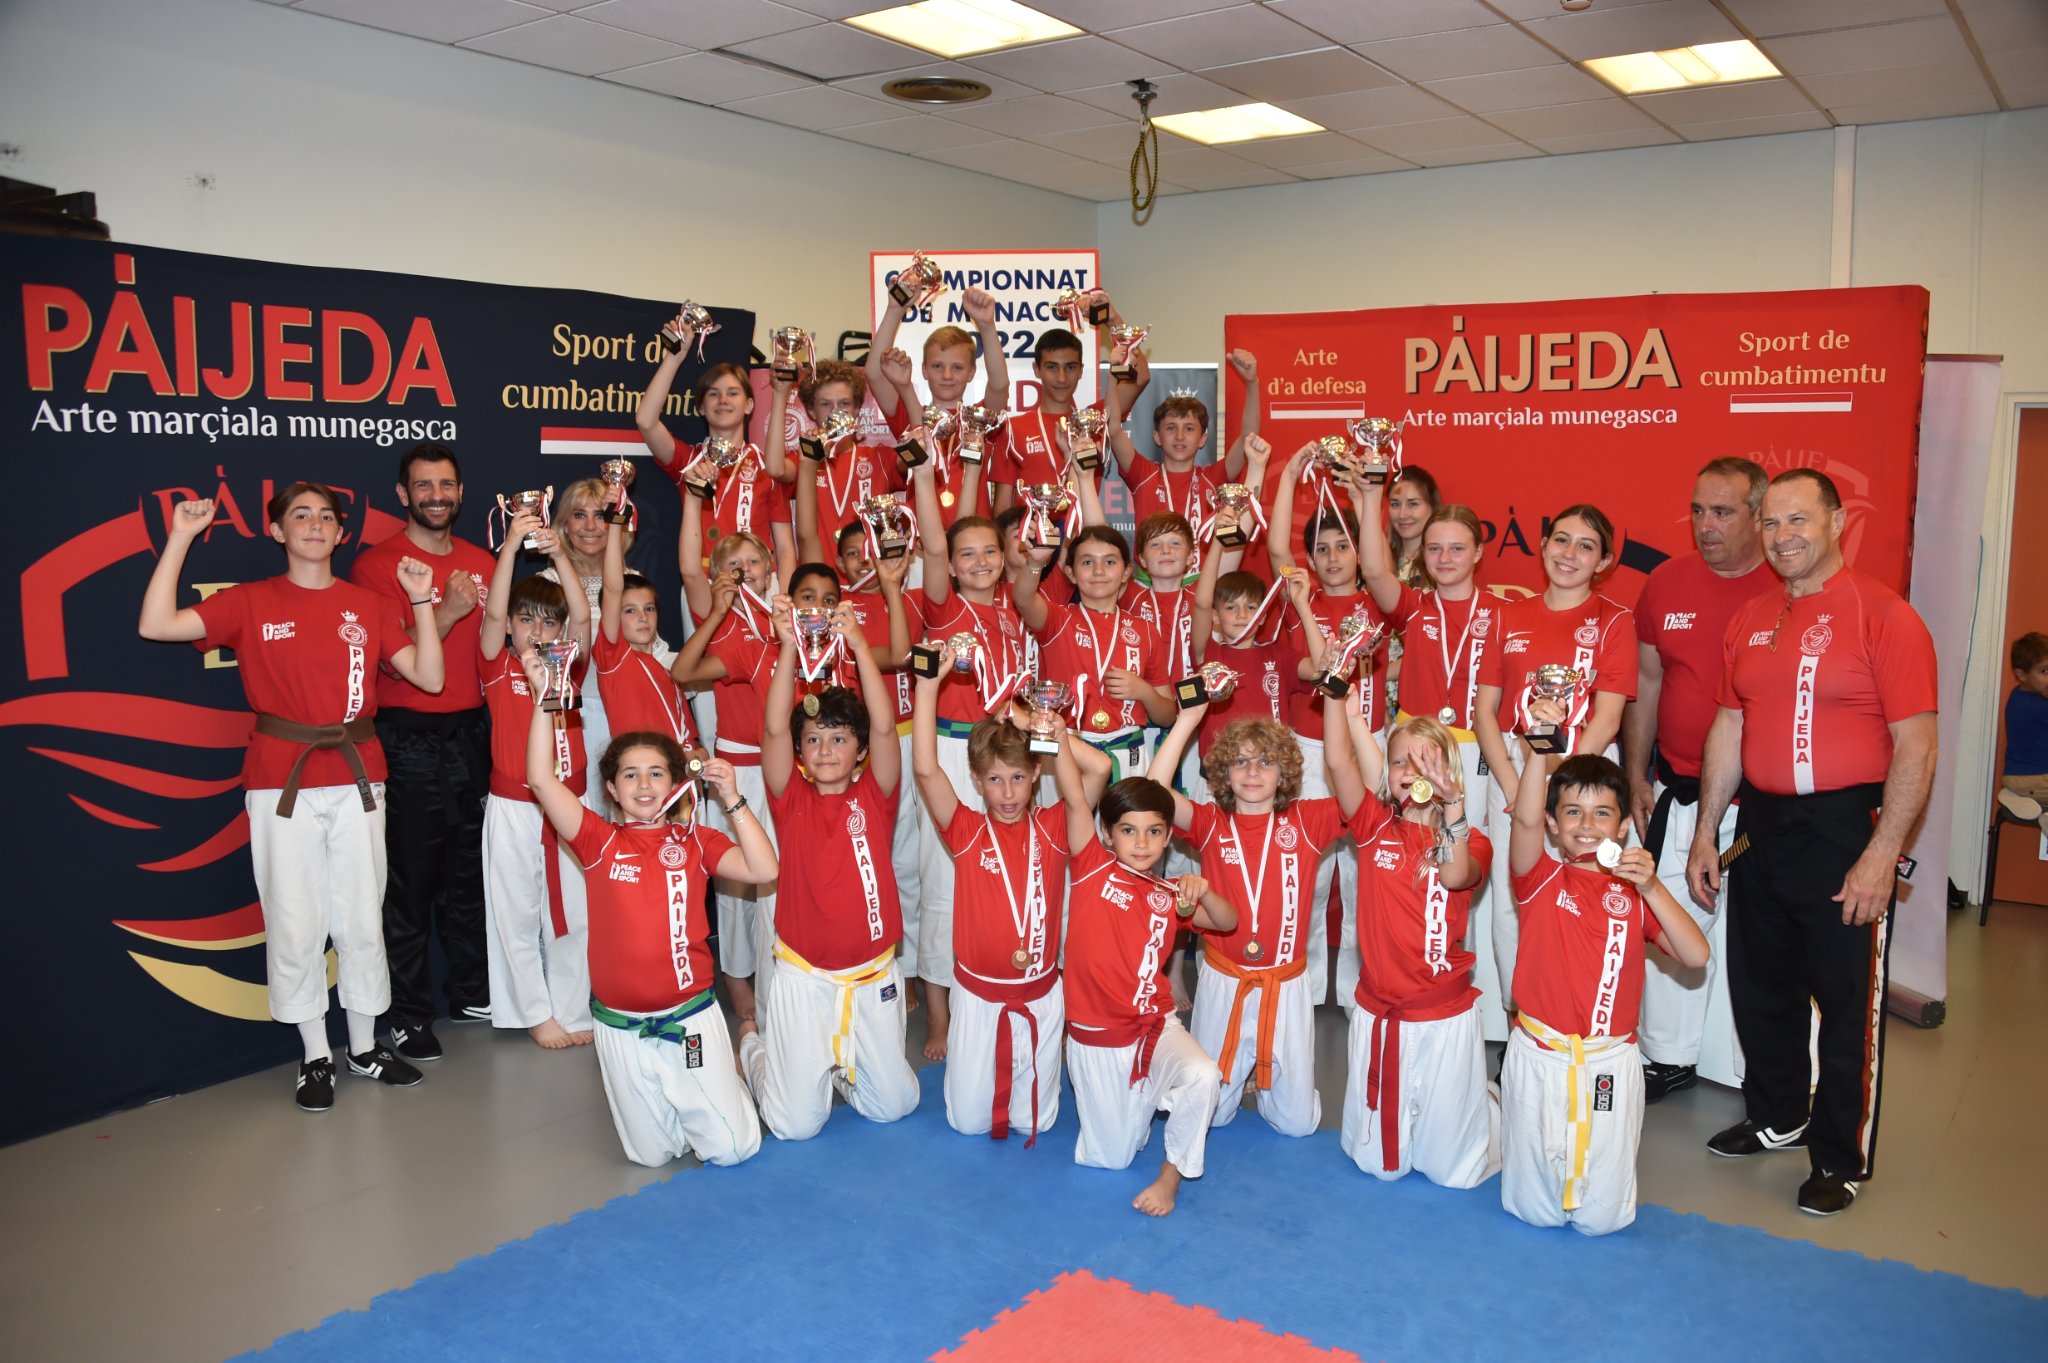 2eme championnat paijeda 1